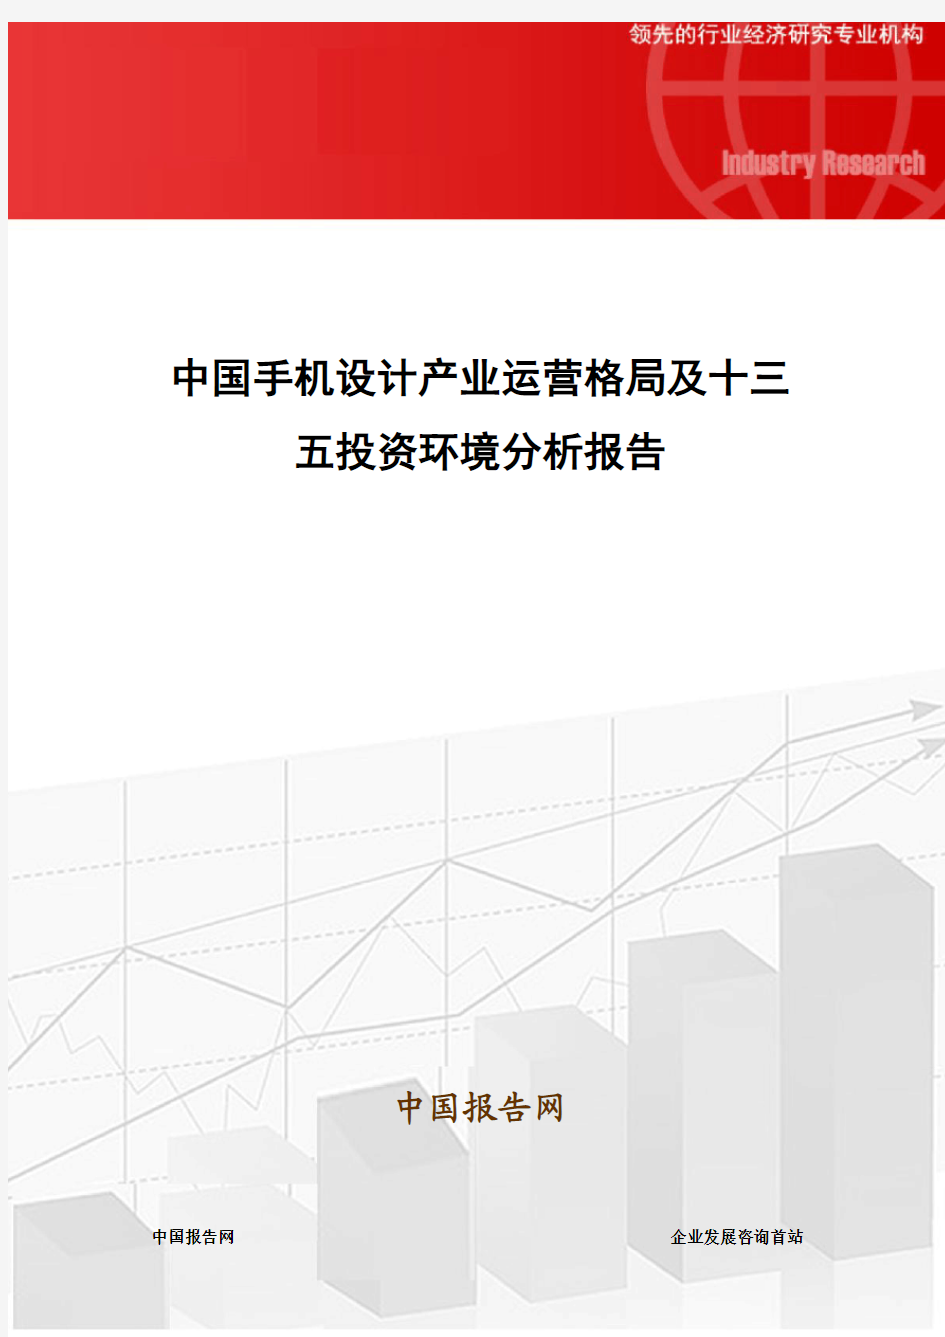 中国手机设计产业运营格局及十三五投资环境分析报告